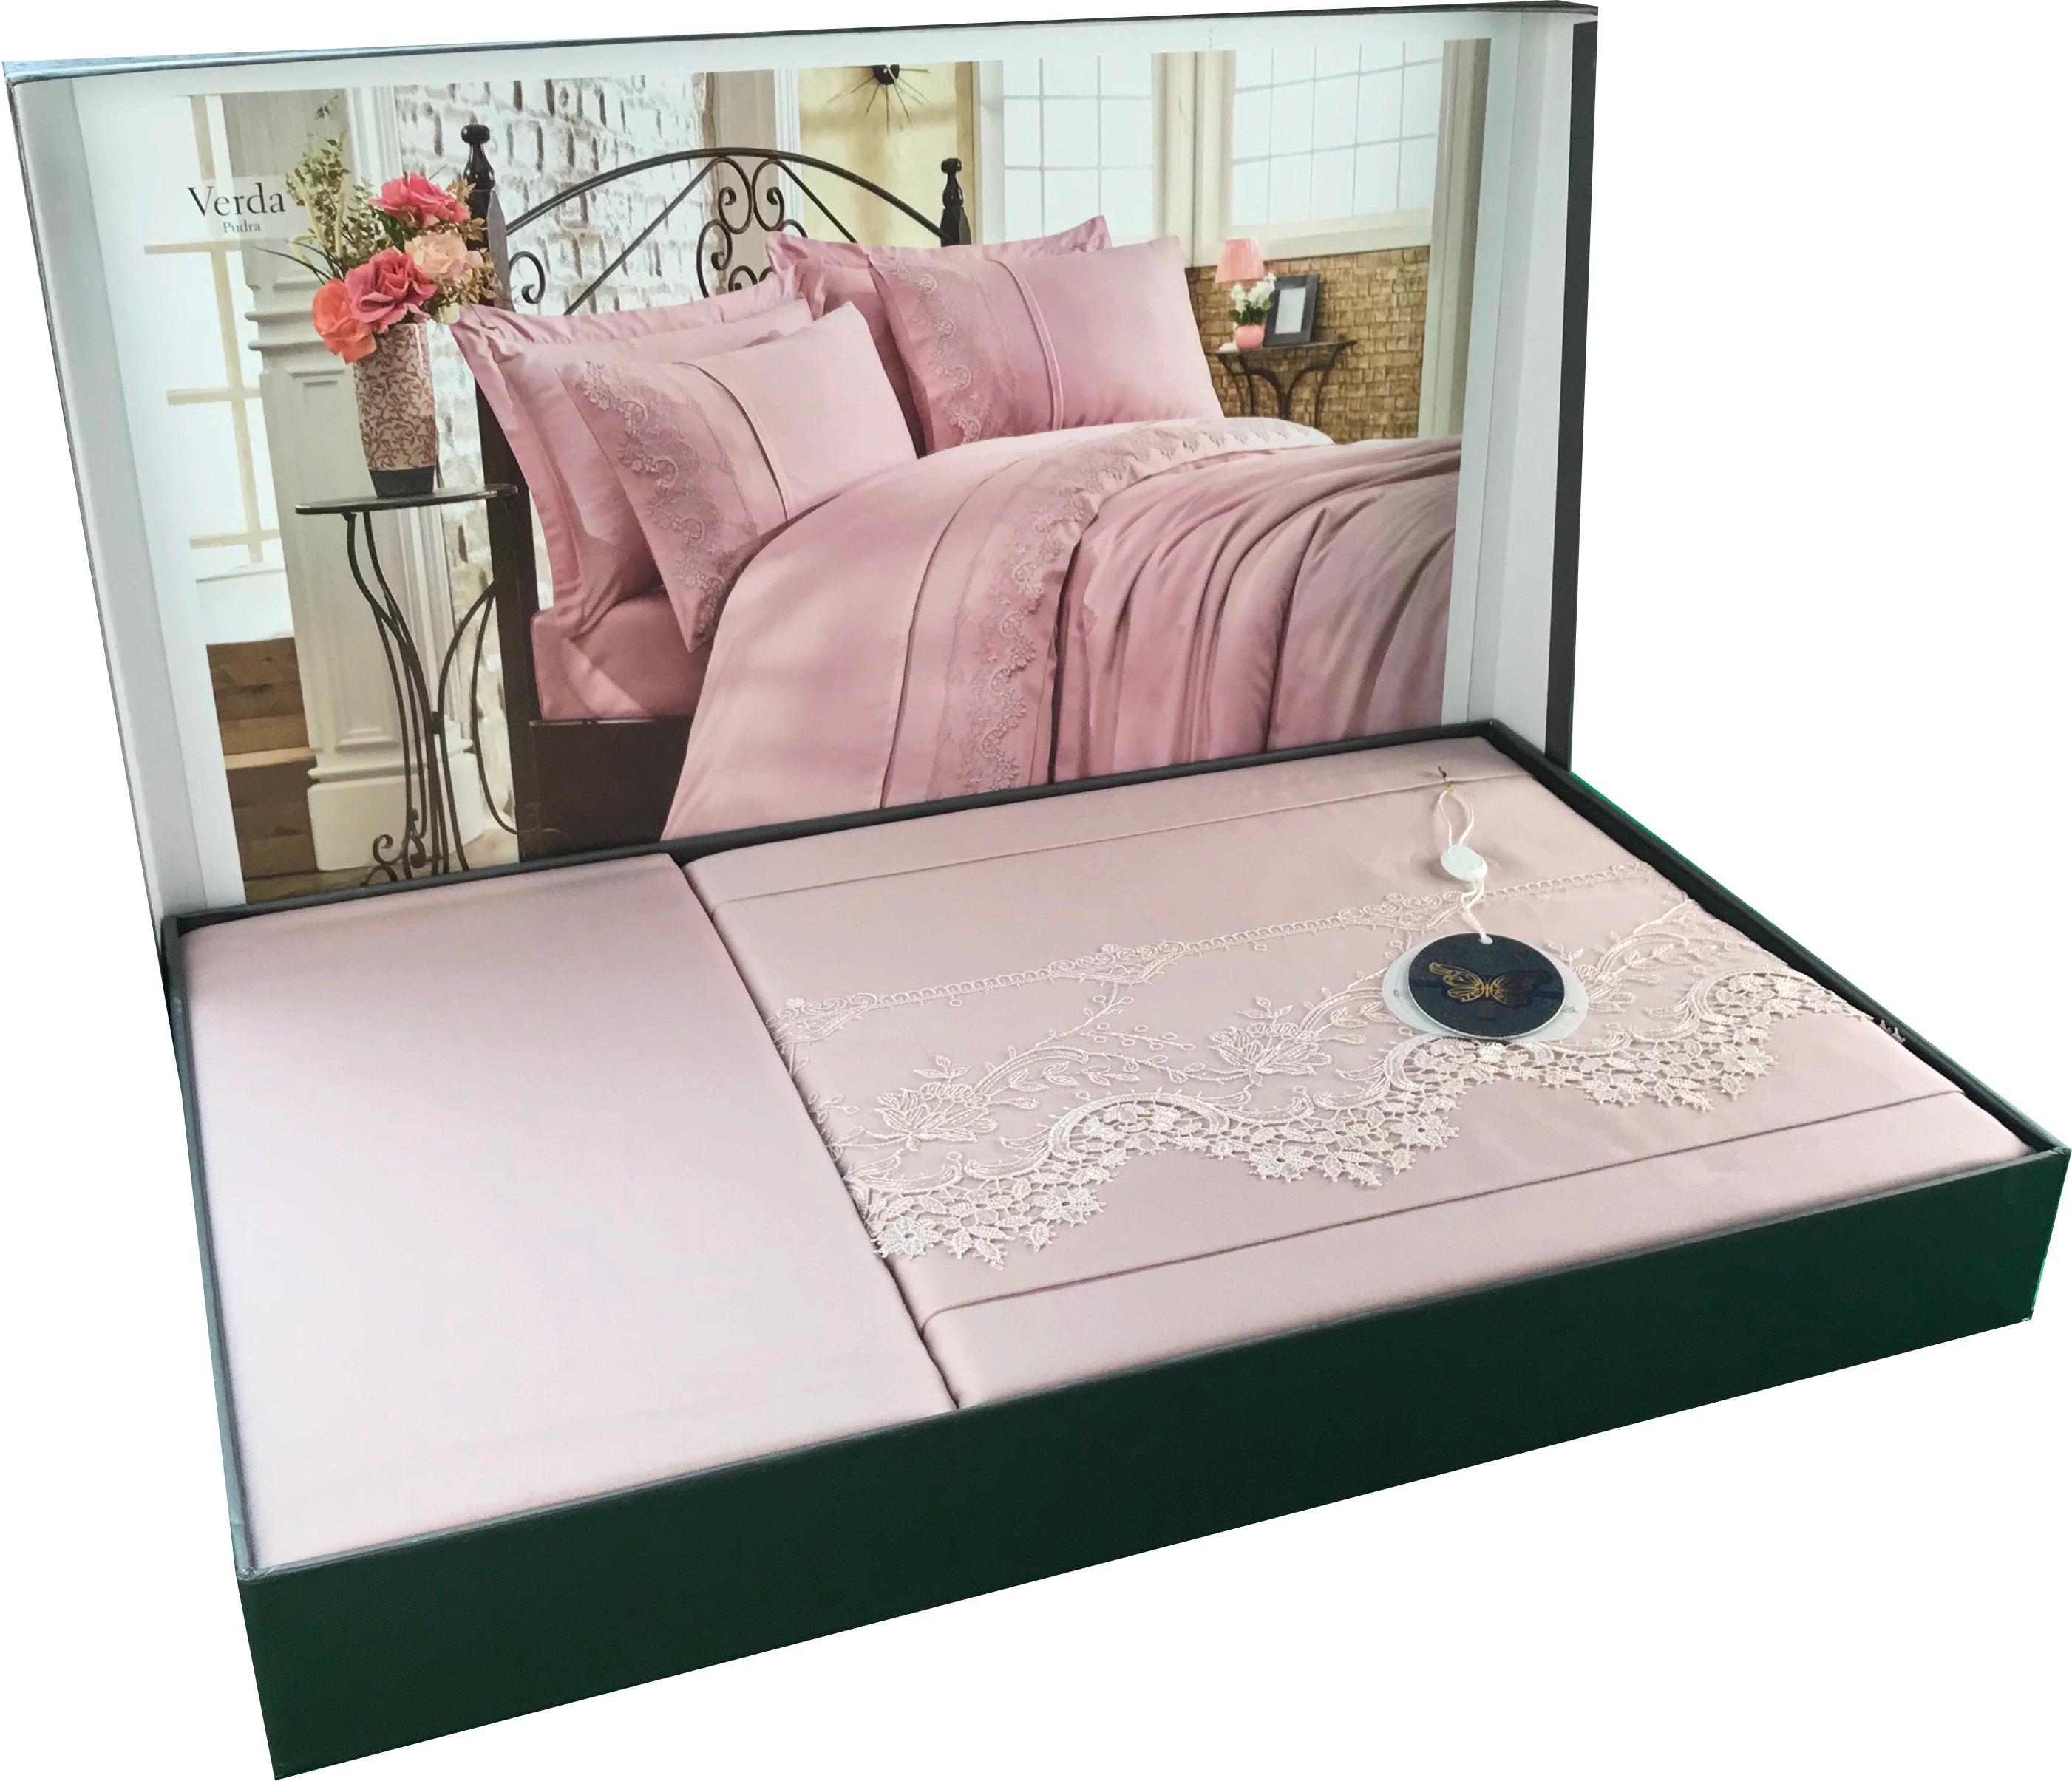 Turkish Full Bedding Set Duvet Cover Bed Sheet Pillow Case Shams